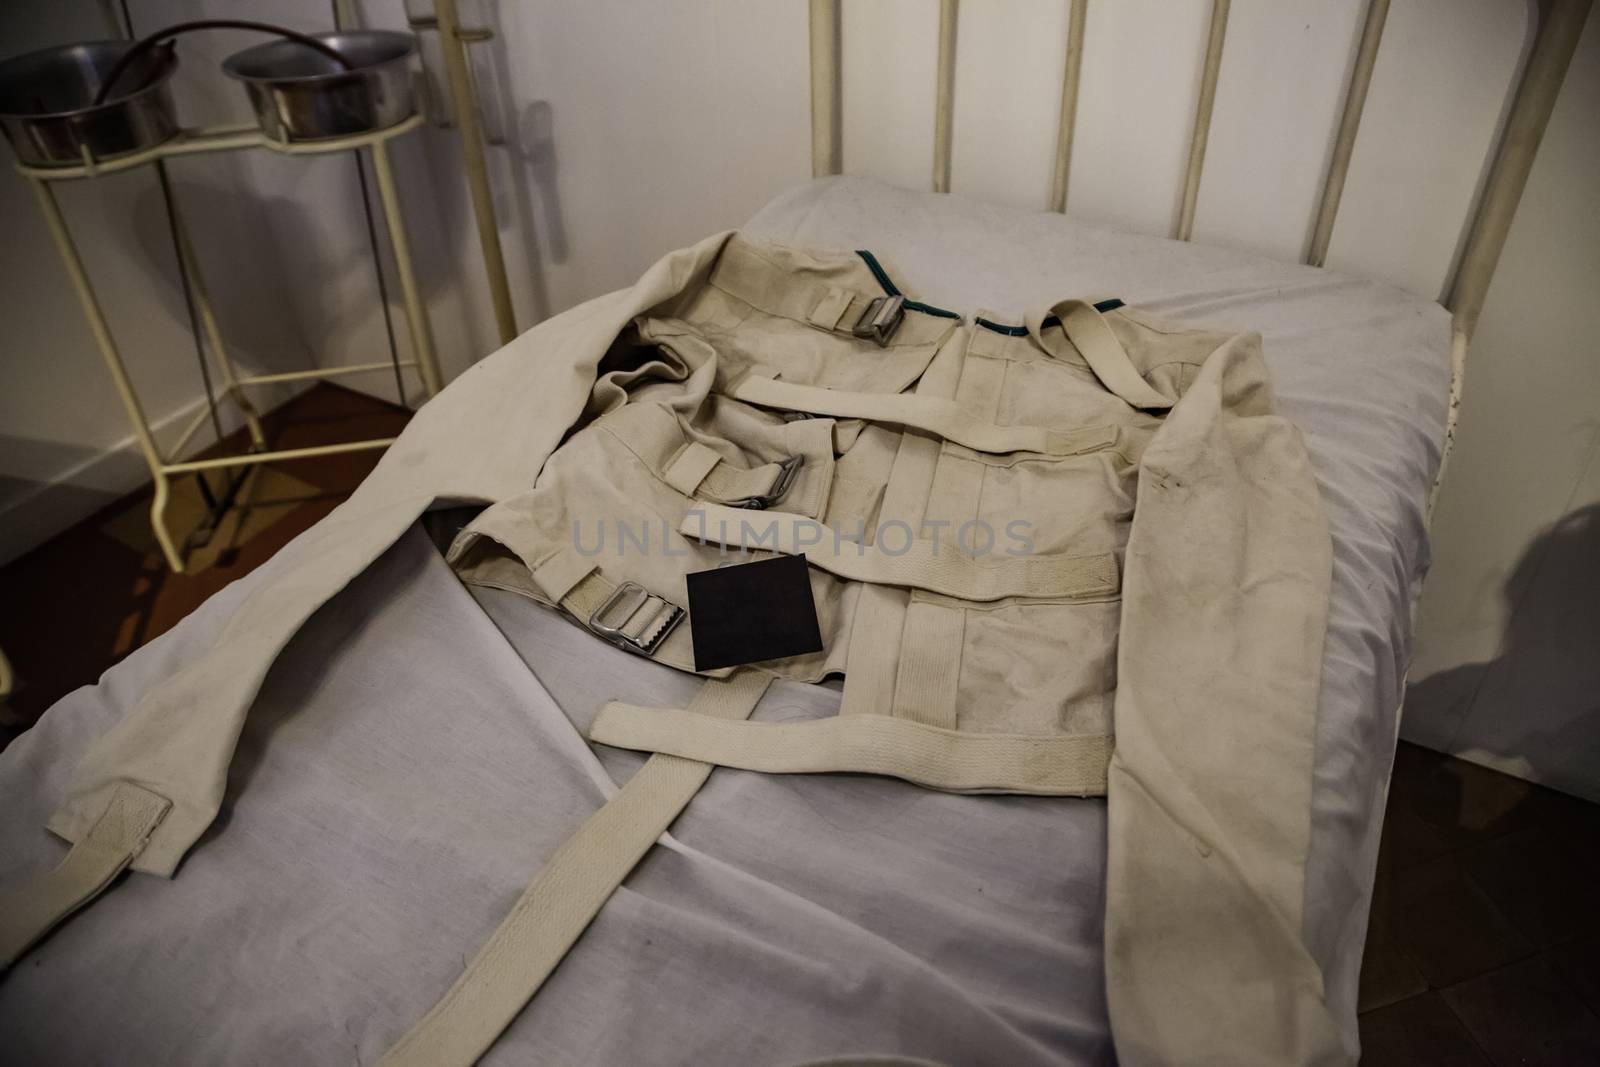 Old psychiatric straitjacket by esebene